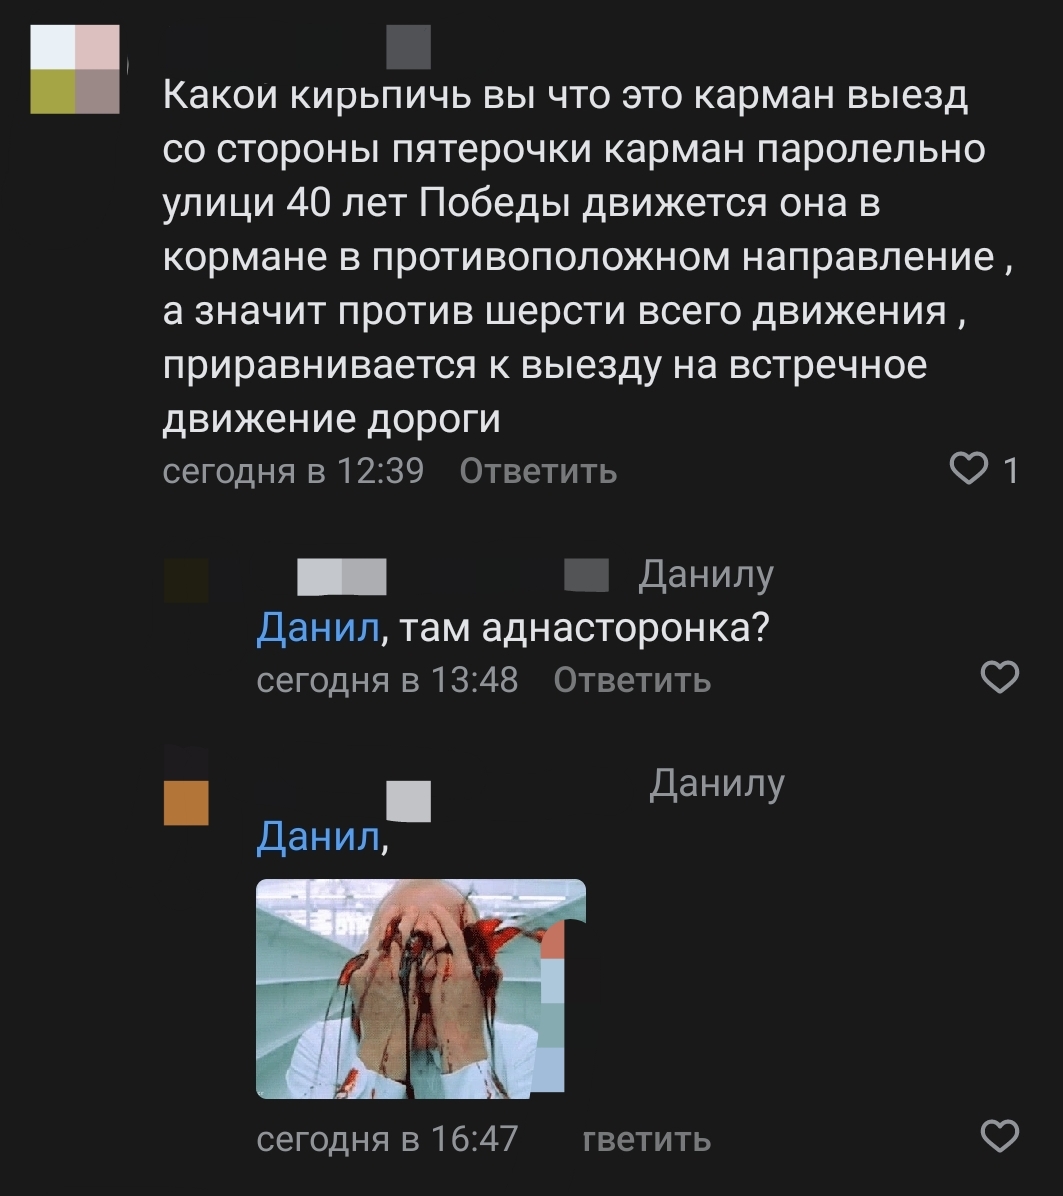 Как защититься от разводов во «Вконтакте»